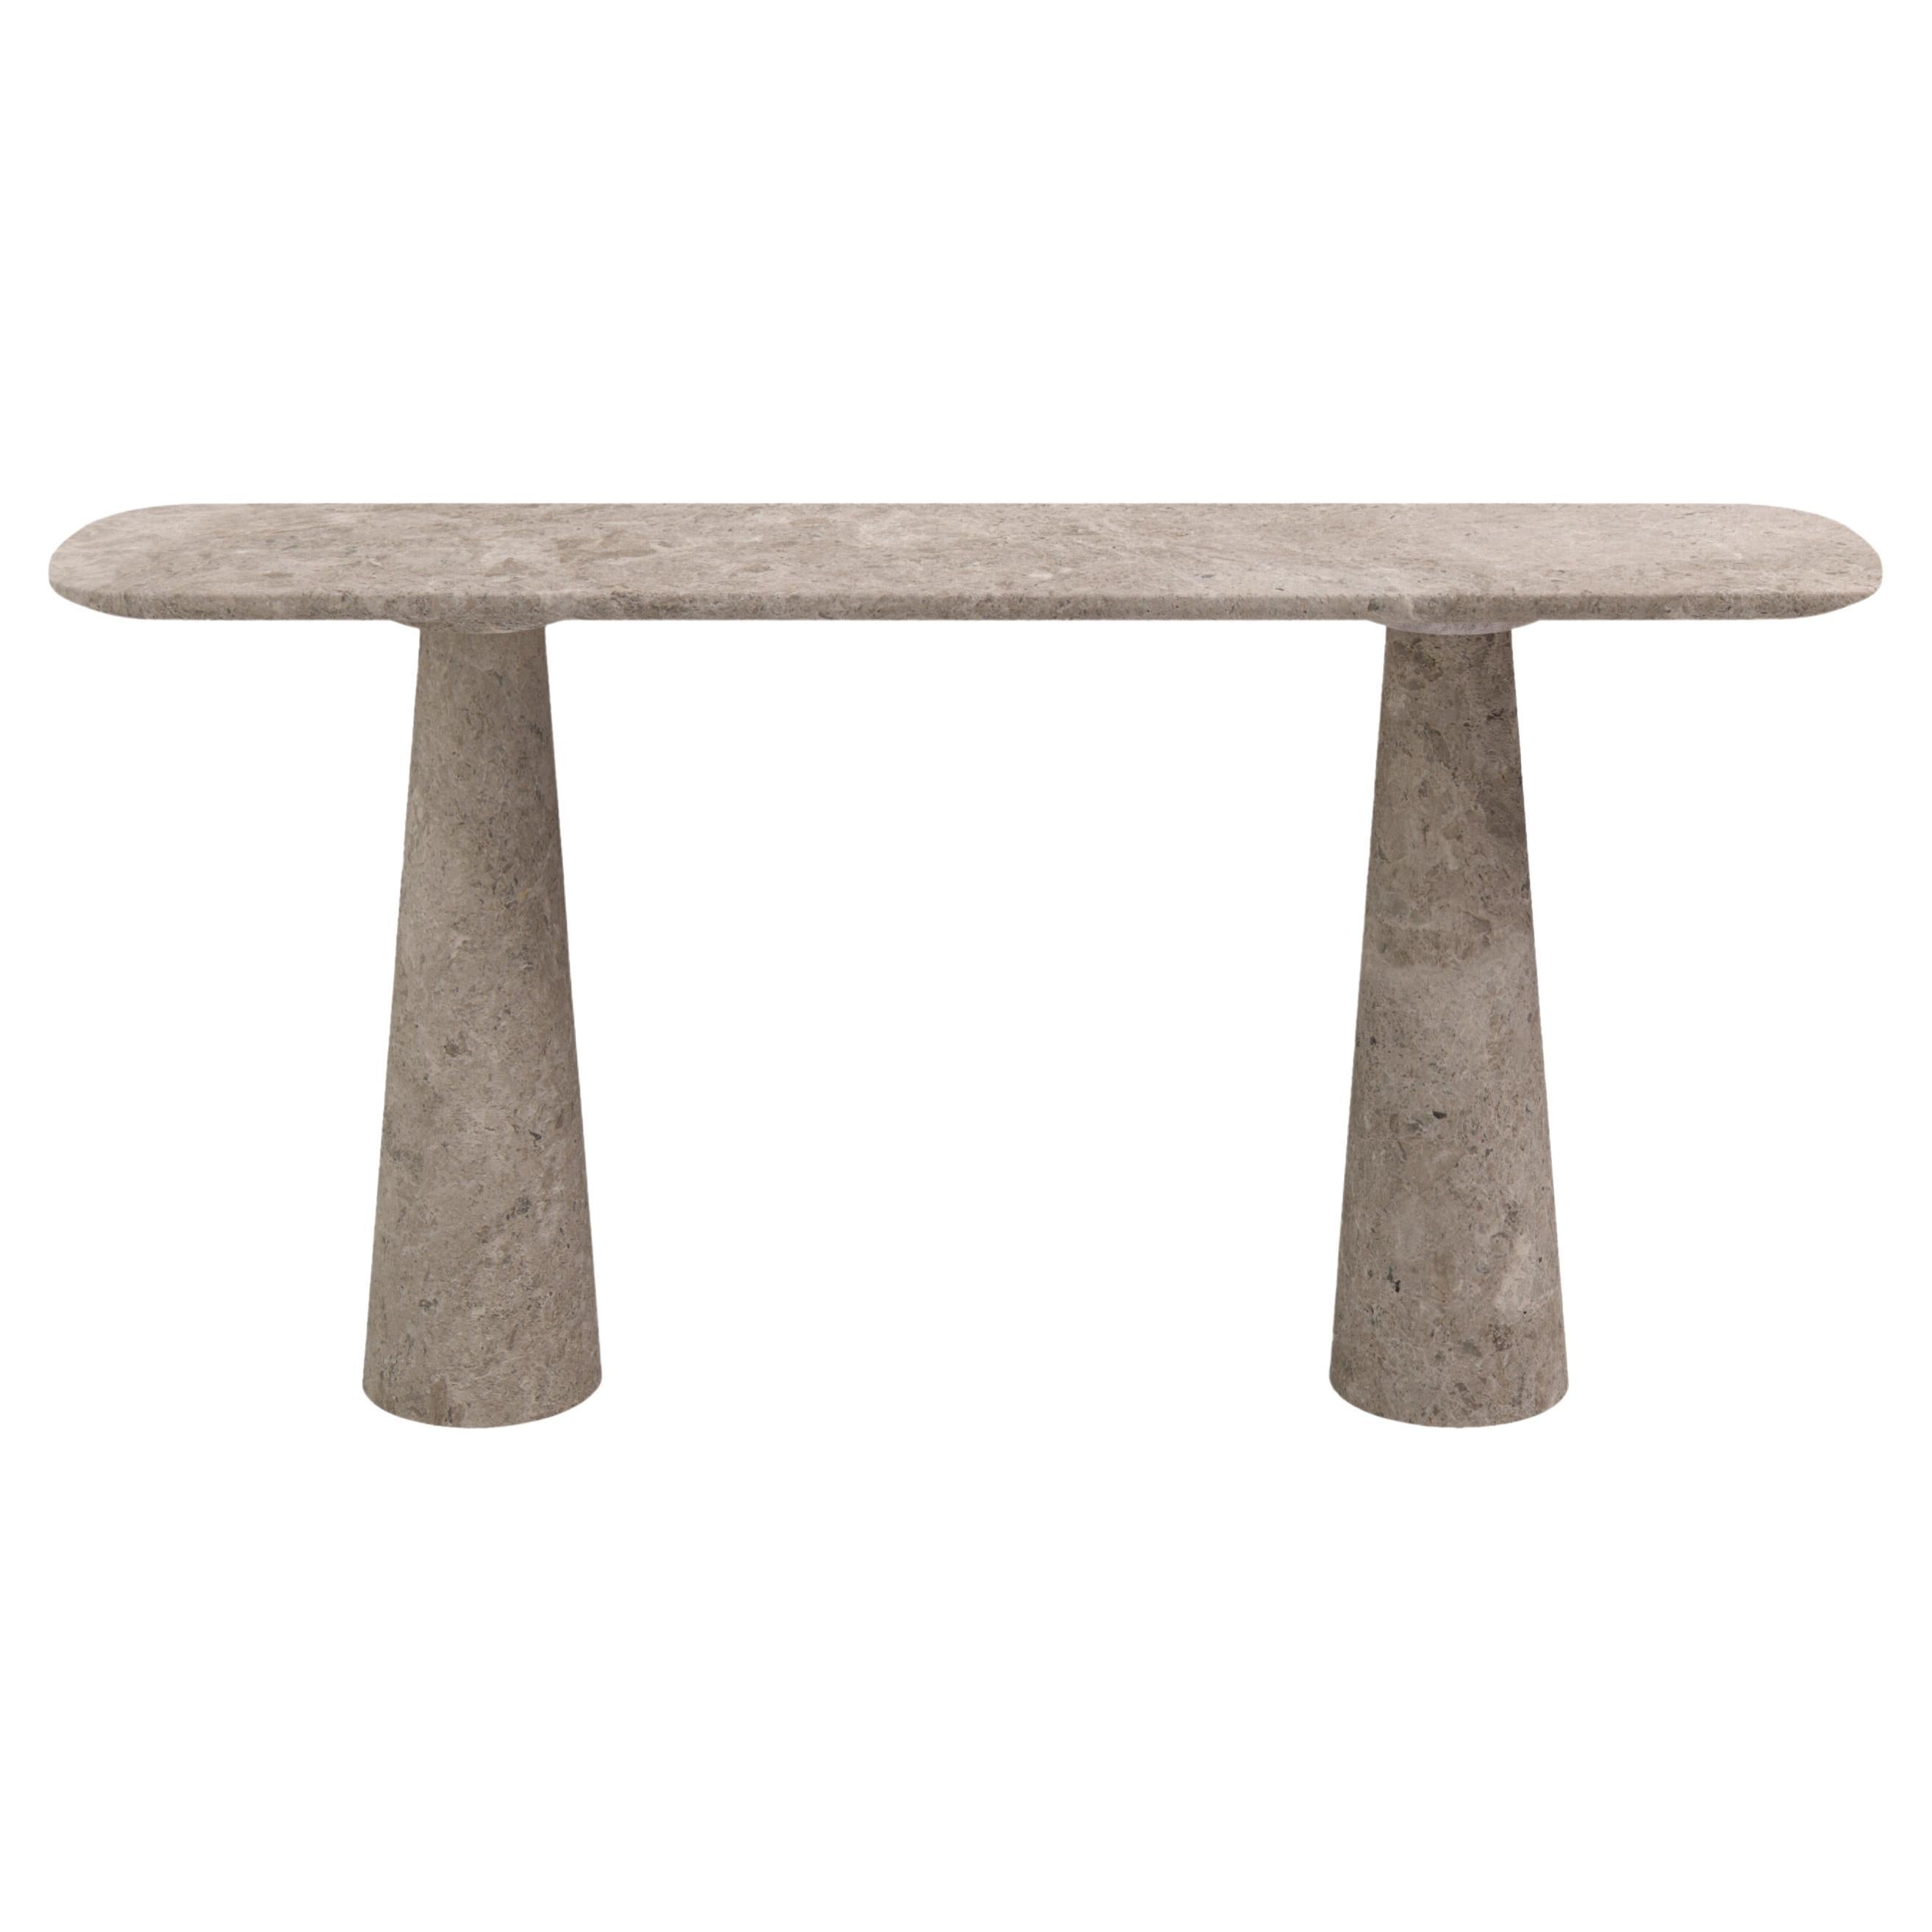 FORM(LA) Cono Console Table 84”L x 15”W x 33”H Tundra Gray Marble For Sale